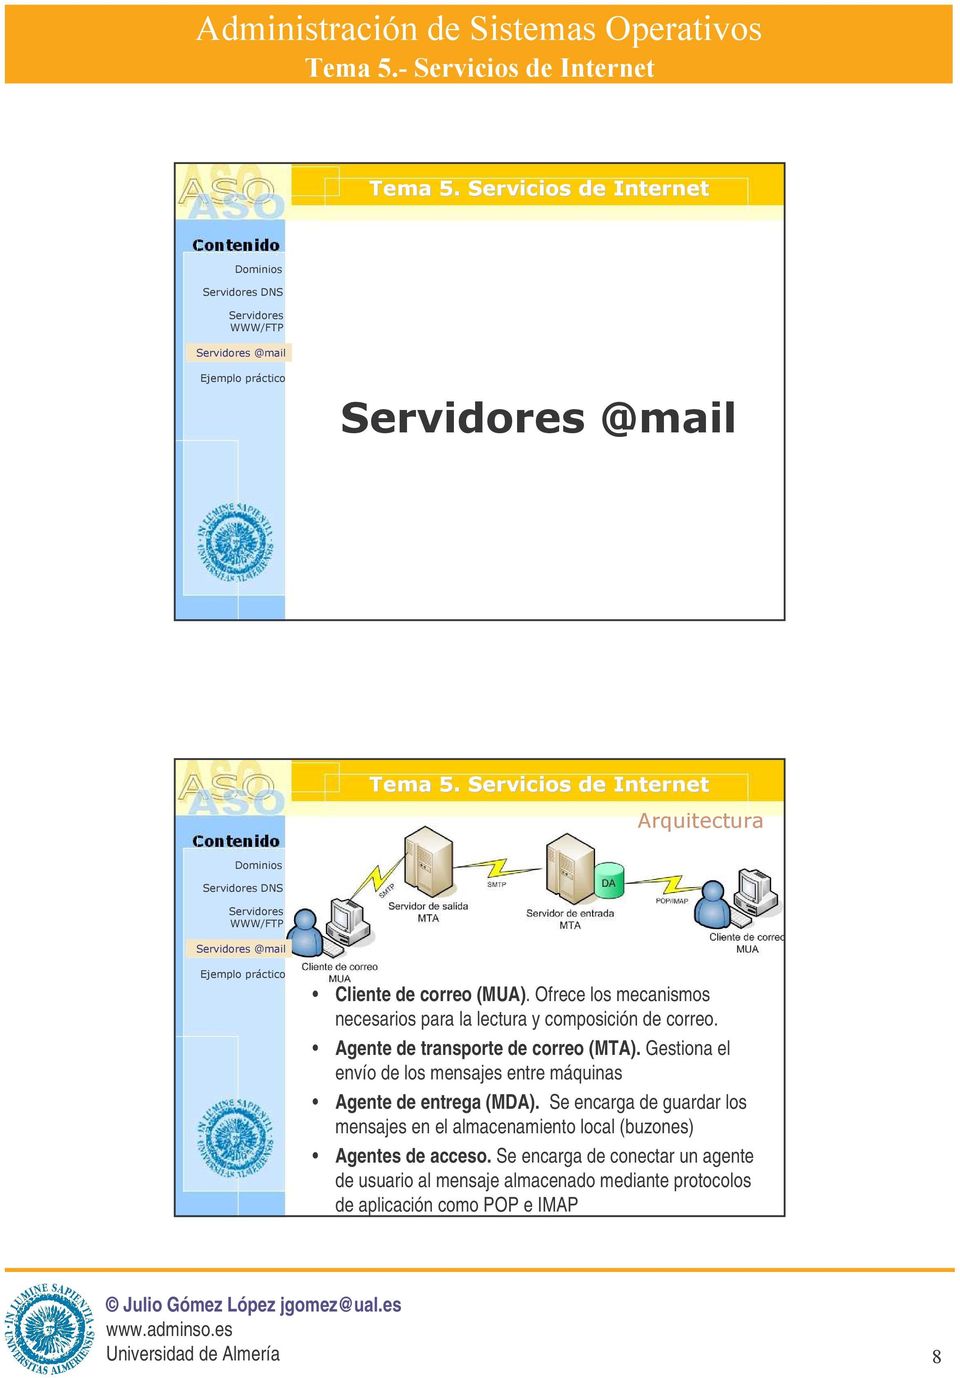 Gestiona el envío de los mensajes entre máquinas Agente de entrega (MDA).